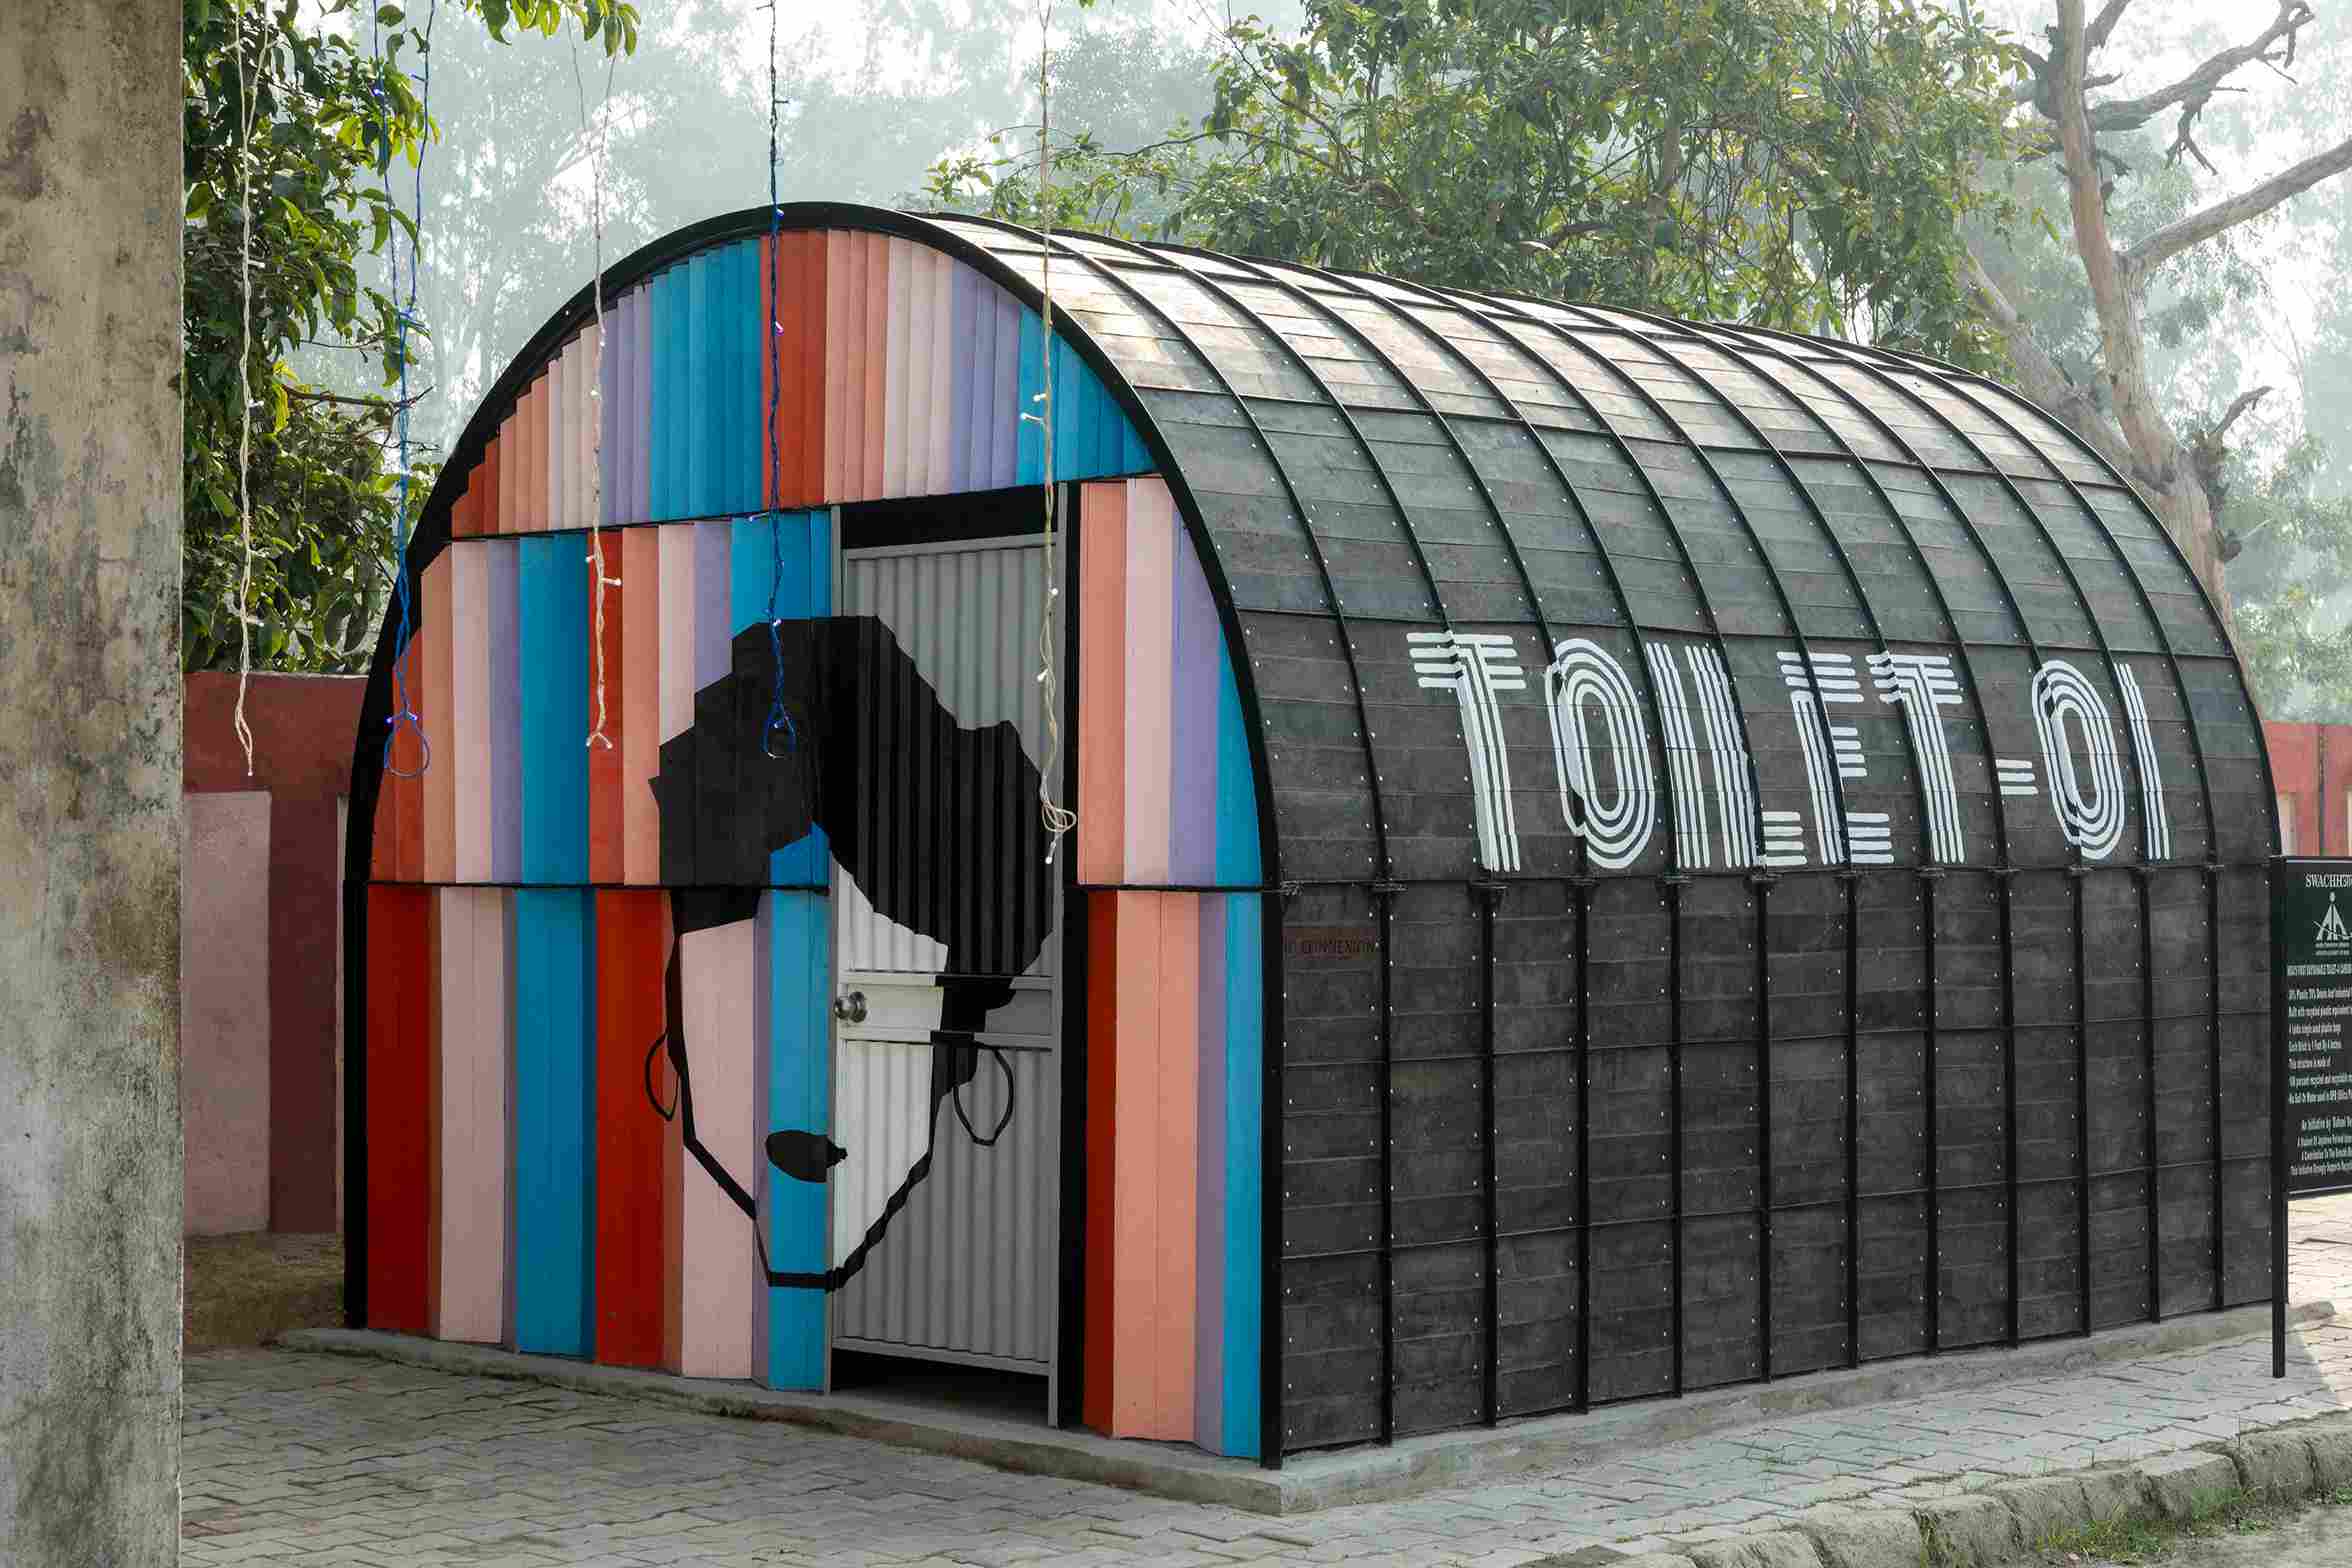 Toilet 01 di tempat parkir bandara internasional Amritsar.